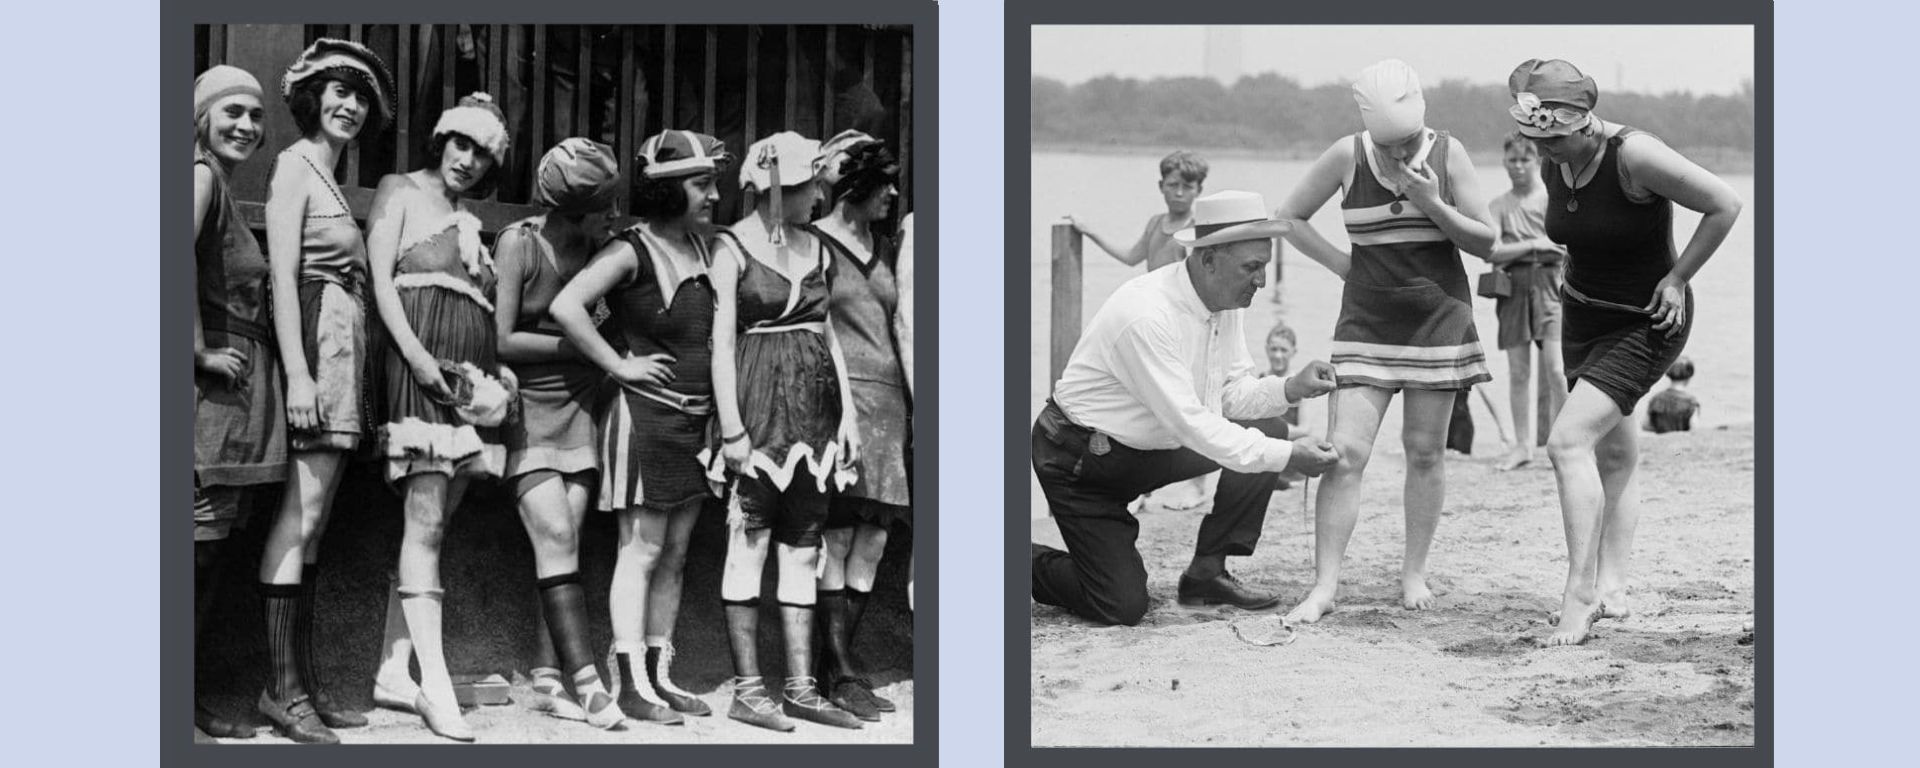 1920's-women-in-bathing-suits